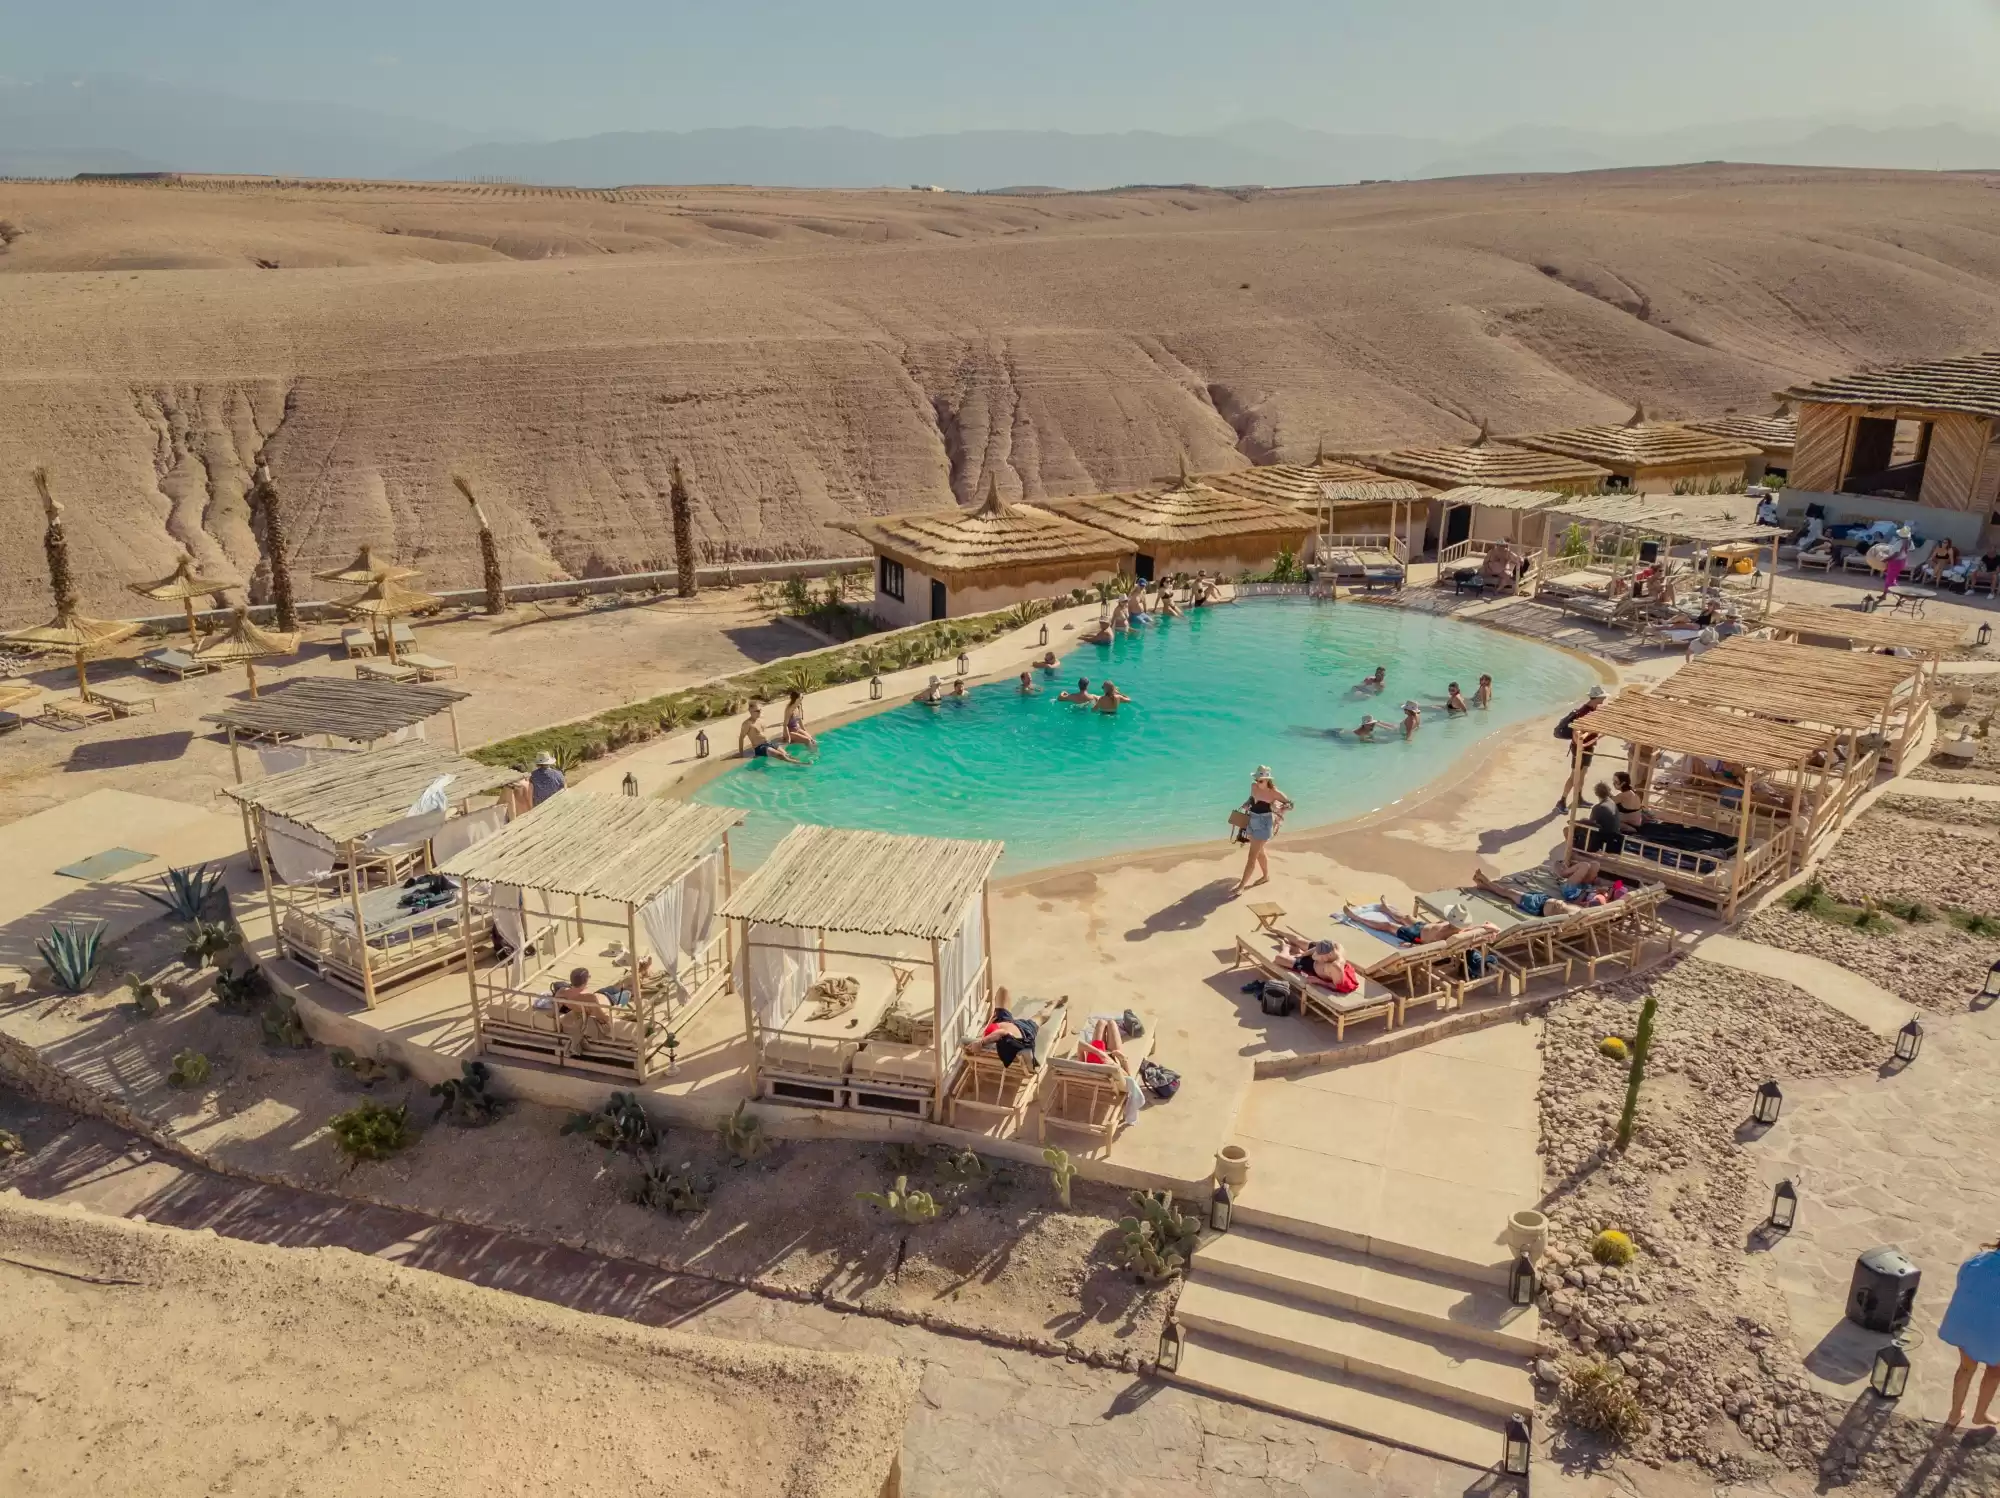  Día de piscina y comida/cena en el desierto de Agafay: Un oasis entre las dunas